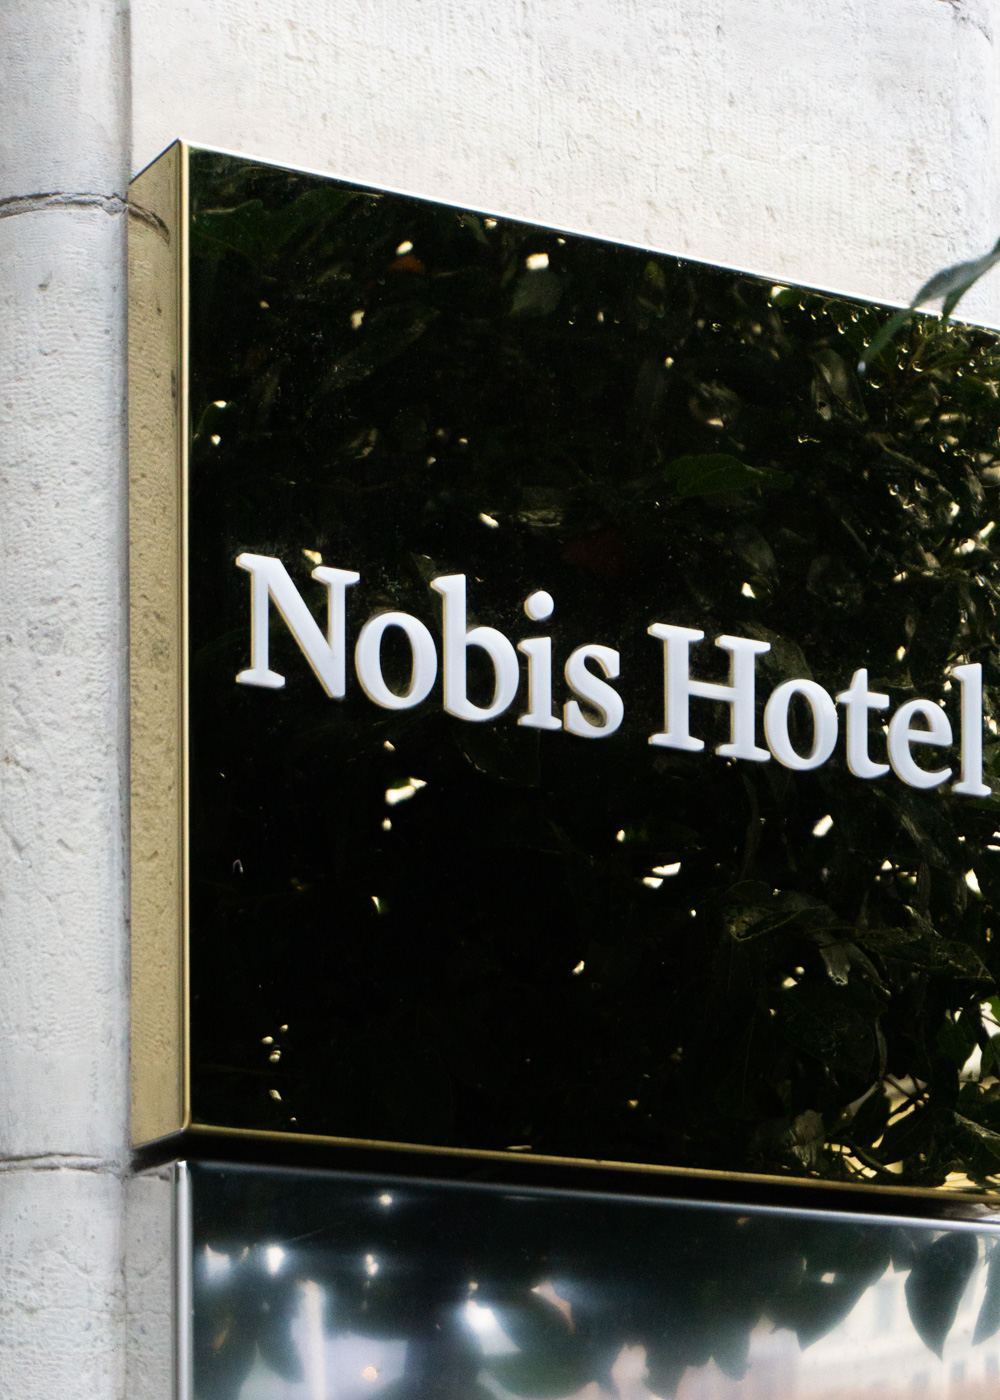 Nobis Hotel Stockholm, Scandinavian Design Hotels, Östermalm | Travel Sweden | RG Daily Blog